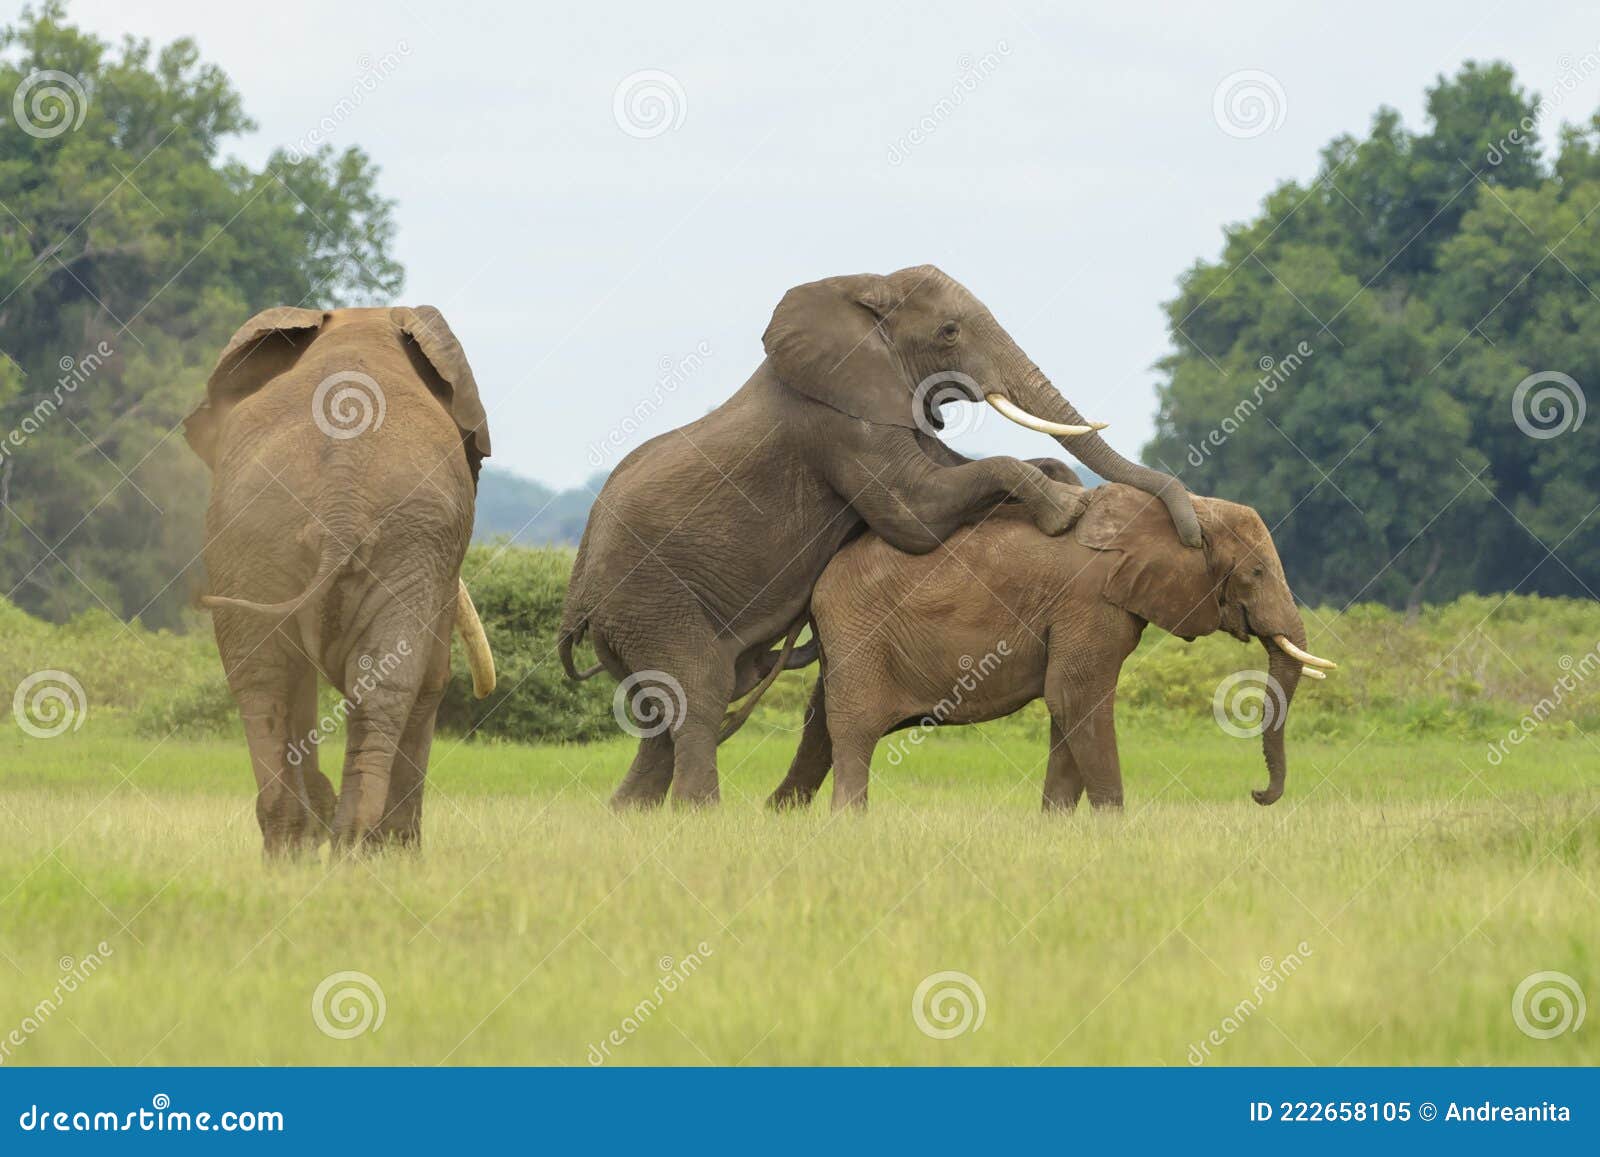 как совокупляются слоны